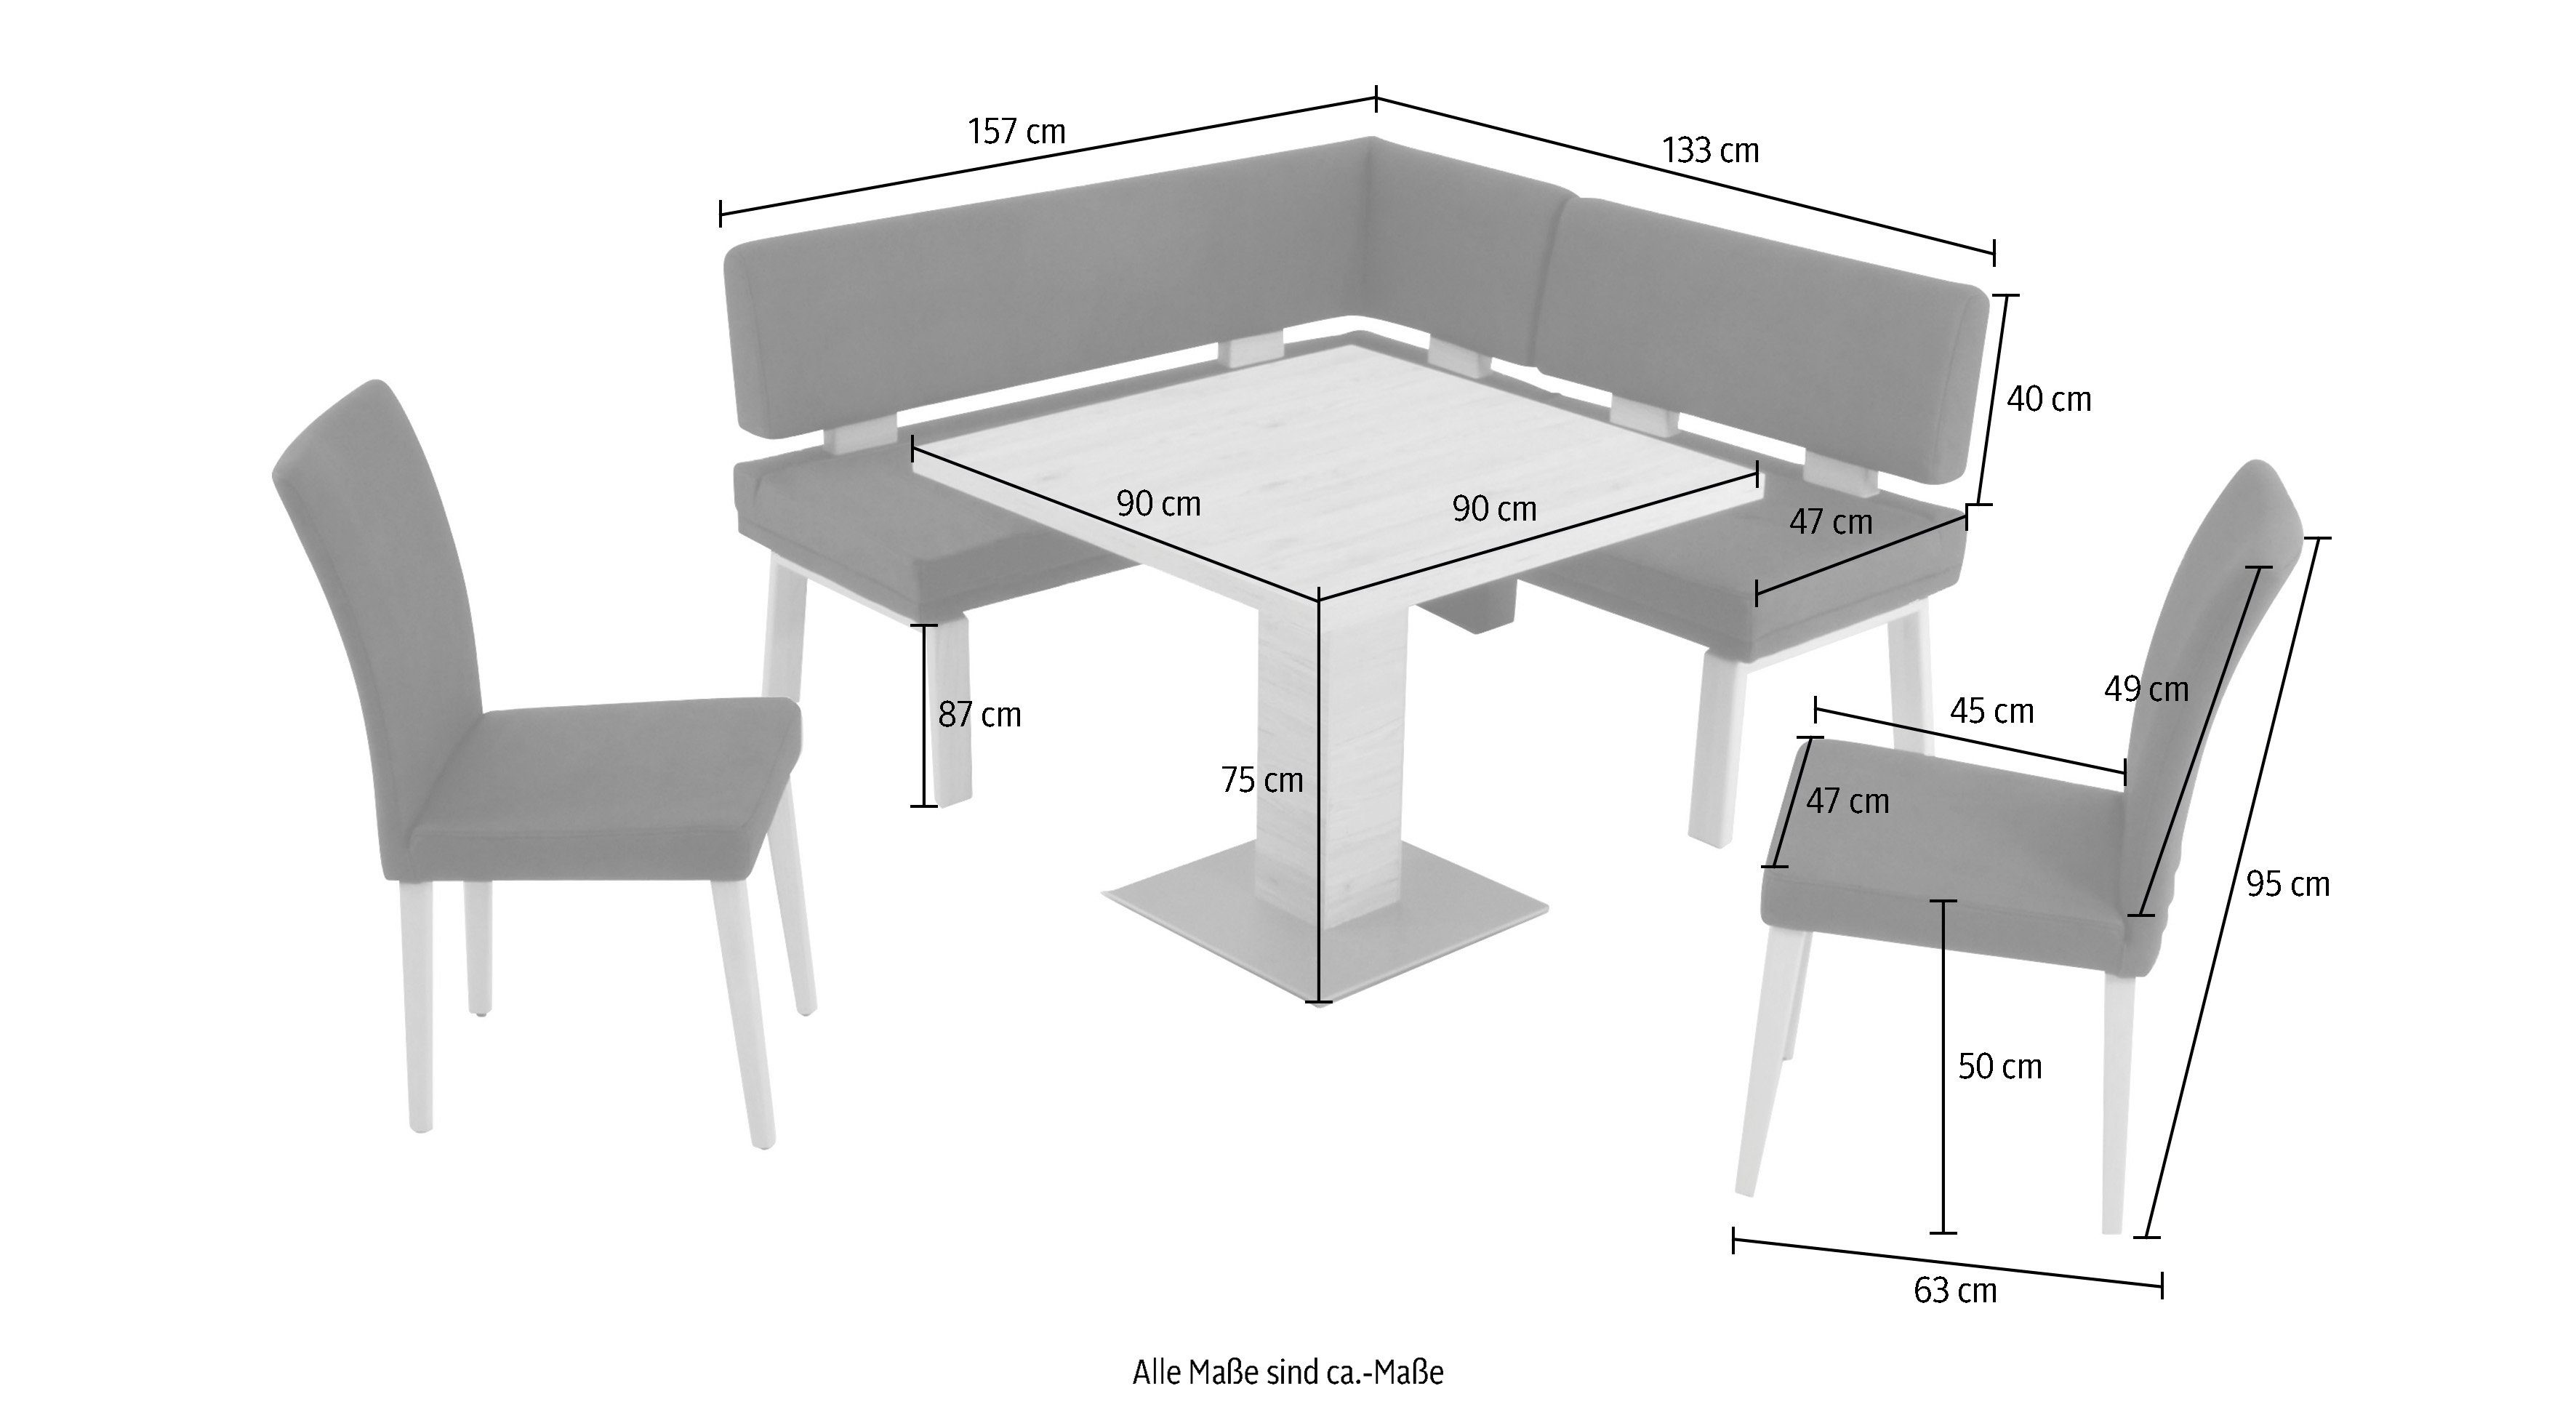 Santos & I, Tisch 157cm, Komfort Wohnen K+W darkgrey und Eiche gleichschenklig 4-Fußholzstühle Eckbankgruppe zwei 90x90cm,